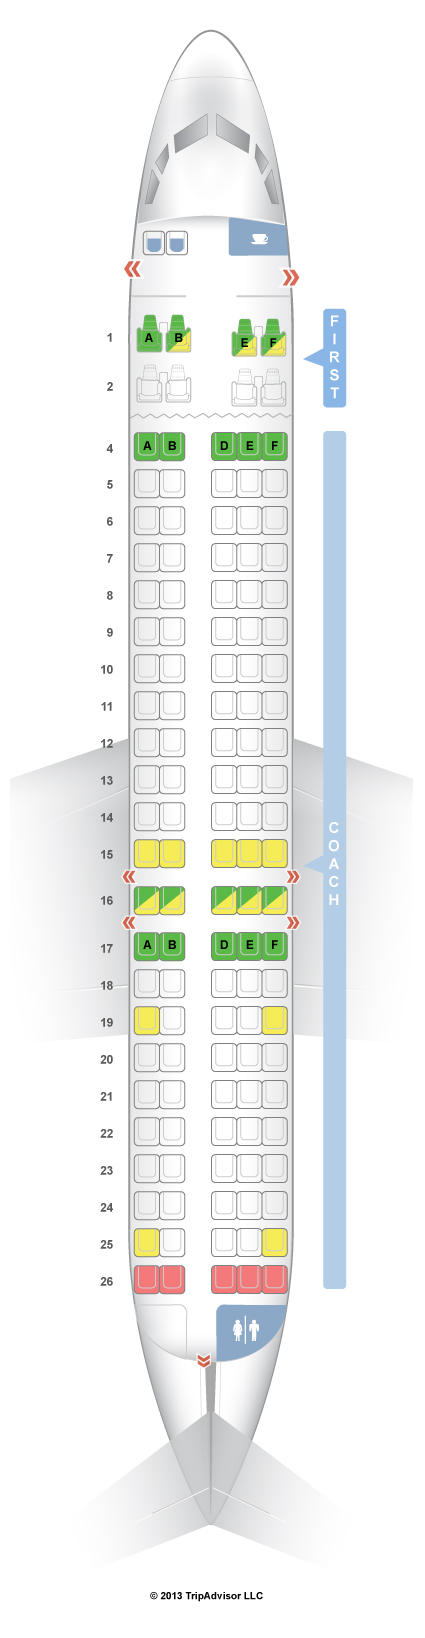 767 Seating Chart Hawaiian